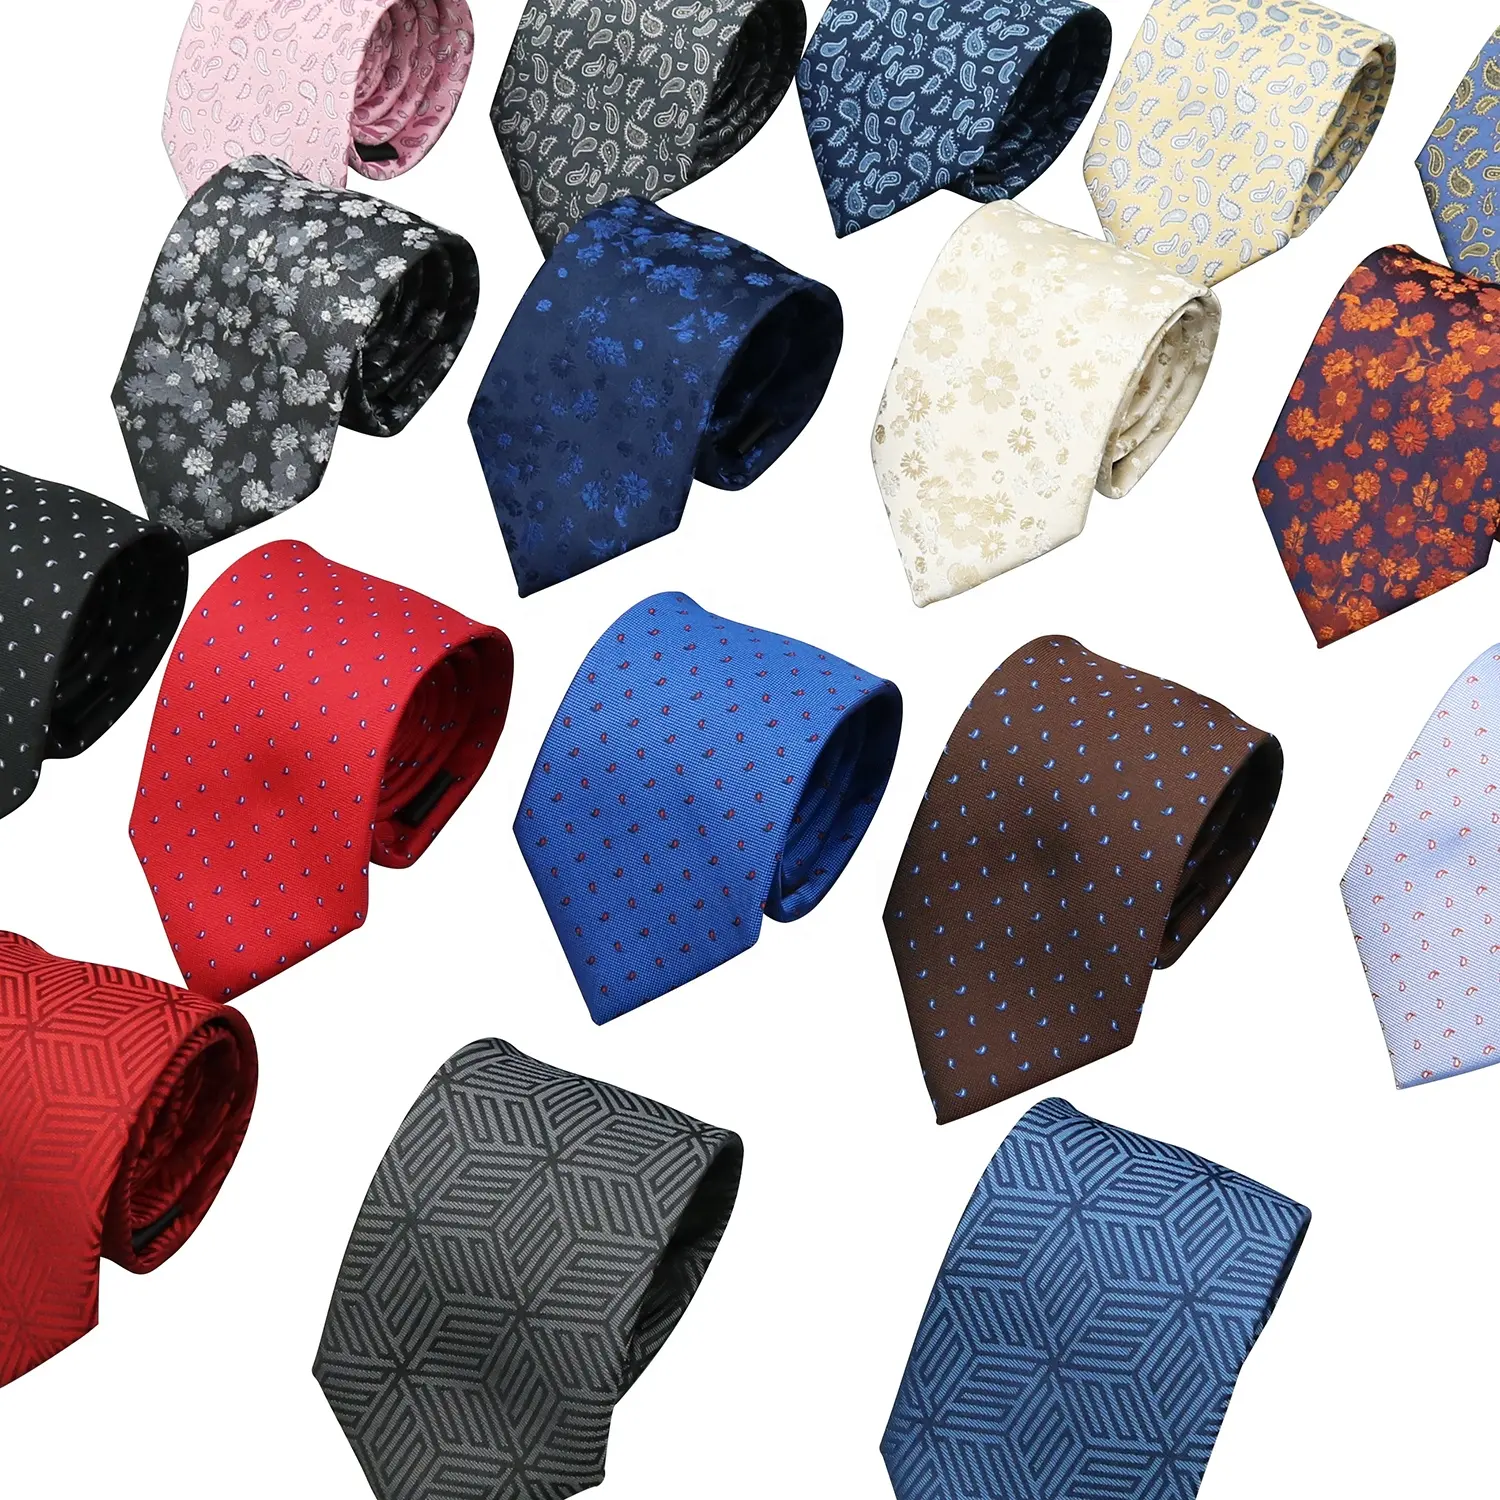 Üretici Gravatas Homens desen giysi bağları ve aksesuarları jakarlı iş saf ipek kravat erkekler için İtalyan setleri